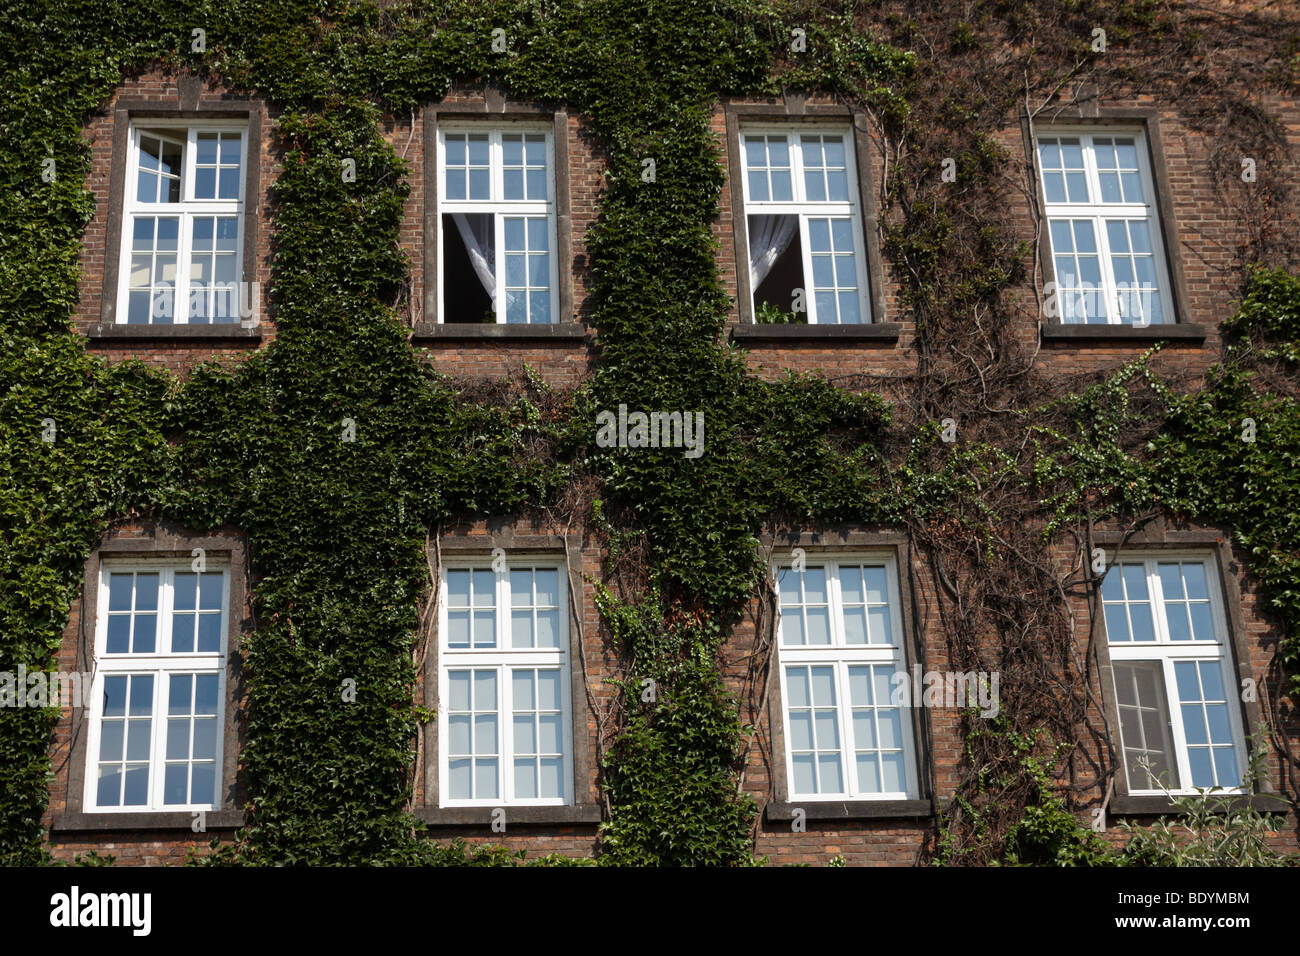 Detalle de una ventana de pared flores verde hiedra Castillo Wawel Cracovia Cracovia Polonia Foto de stock